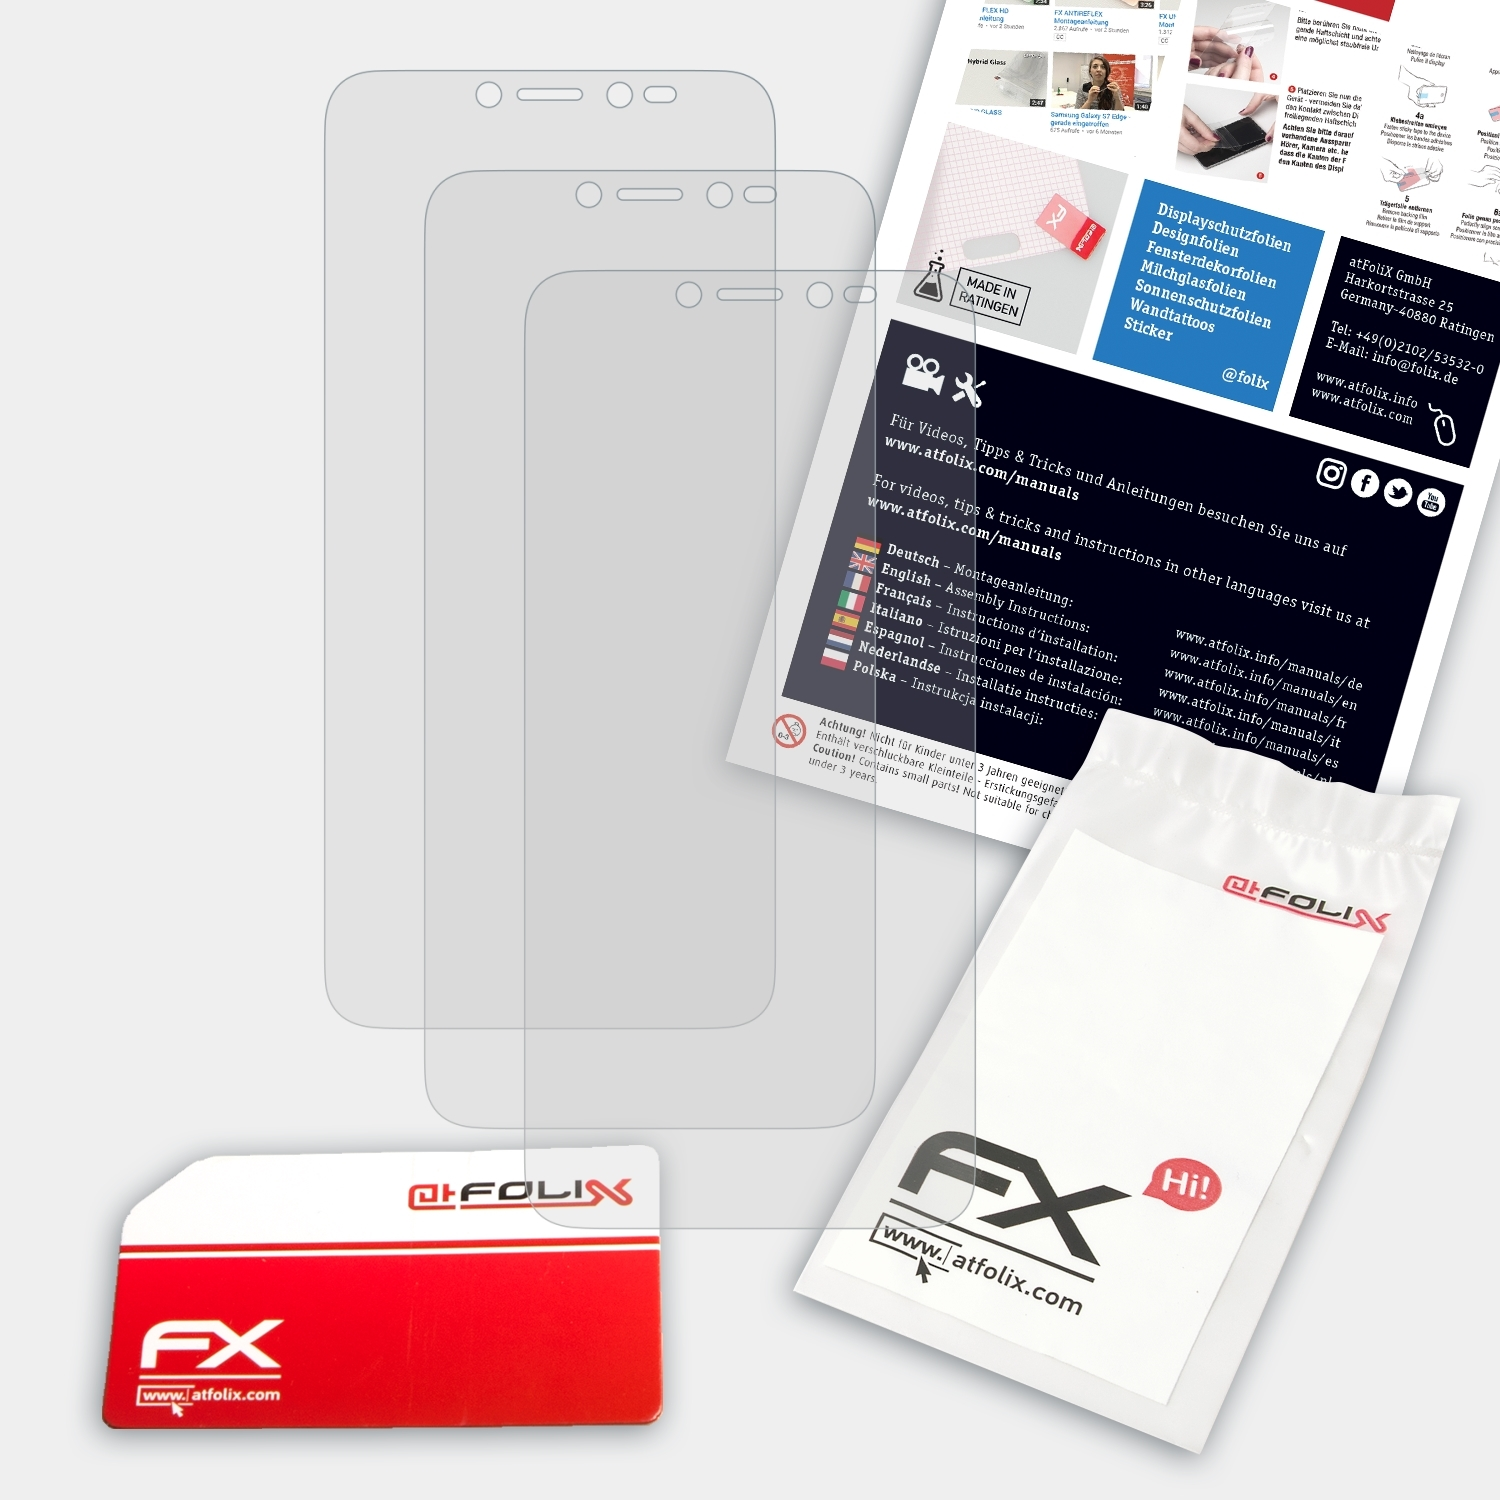 ATFOLIX 3x FX-Antireflex Alcatel Displayschutz(für 1V)